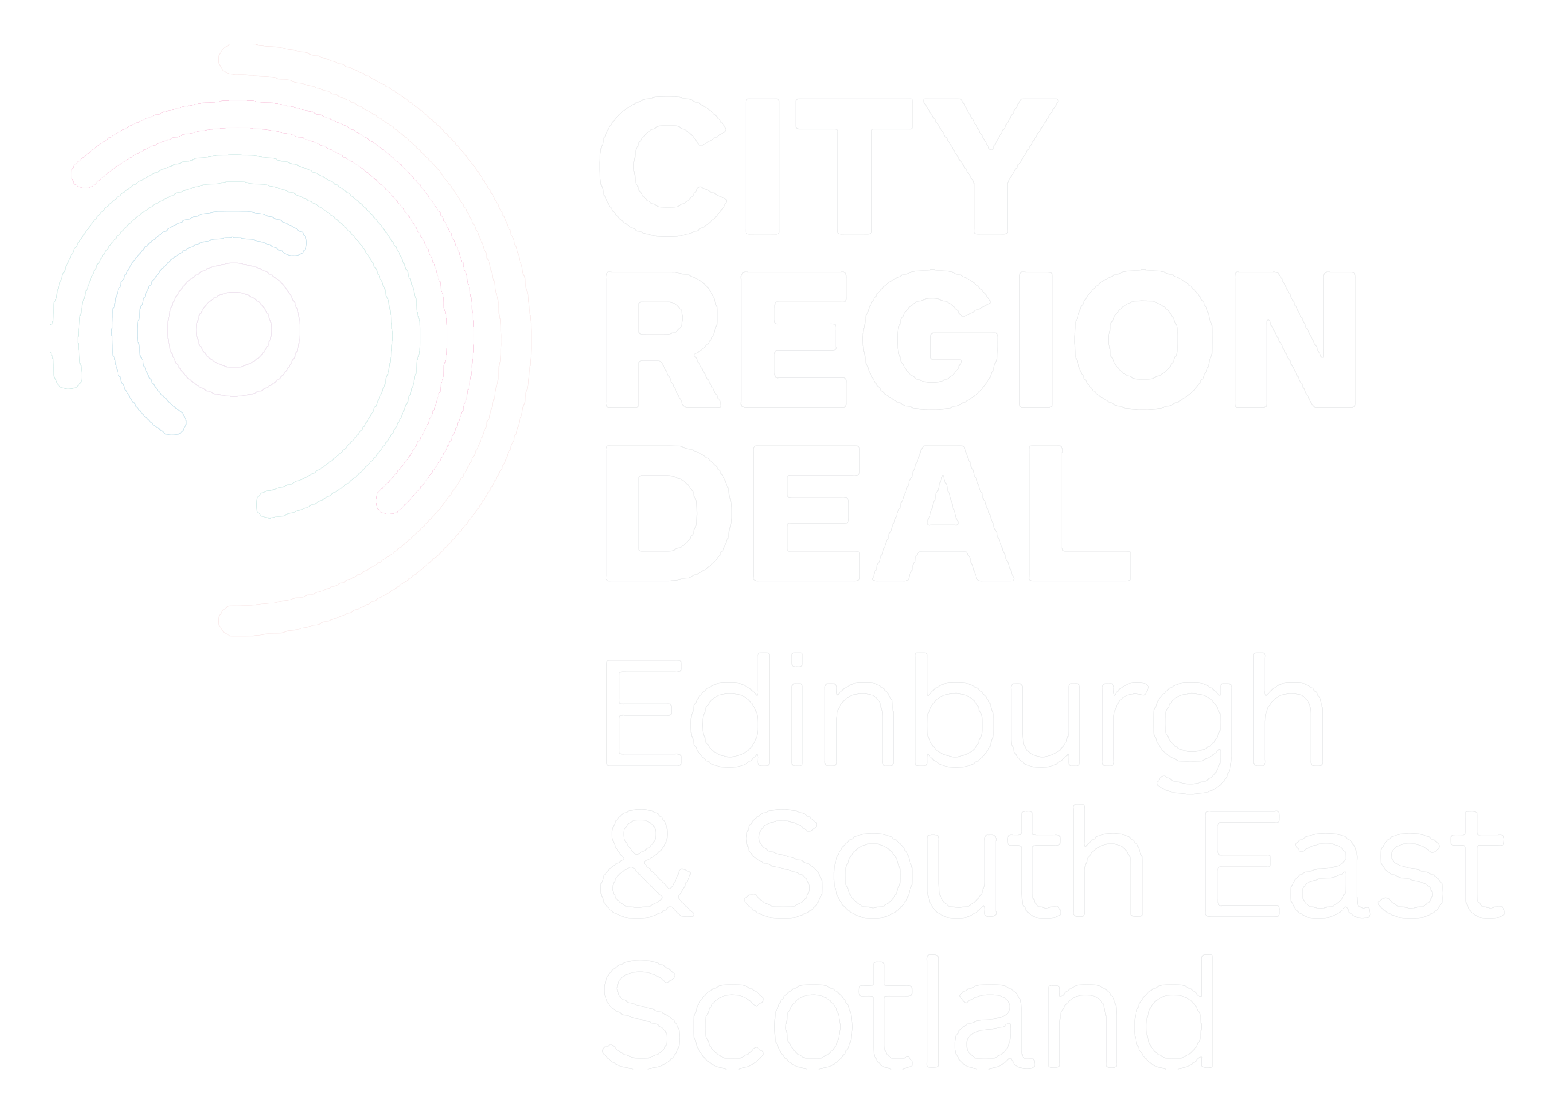 City Region Deal